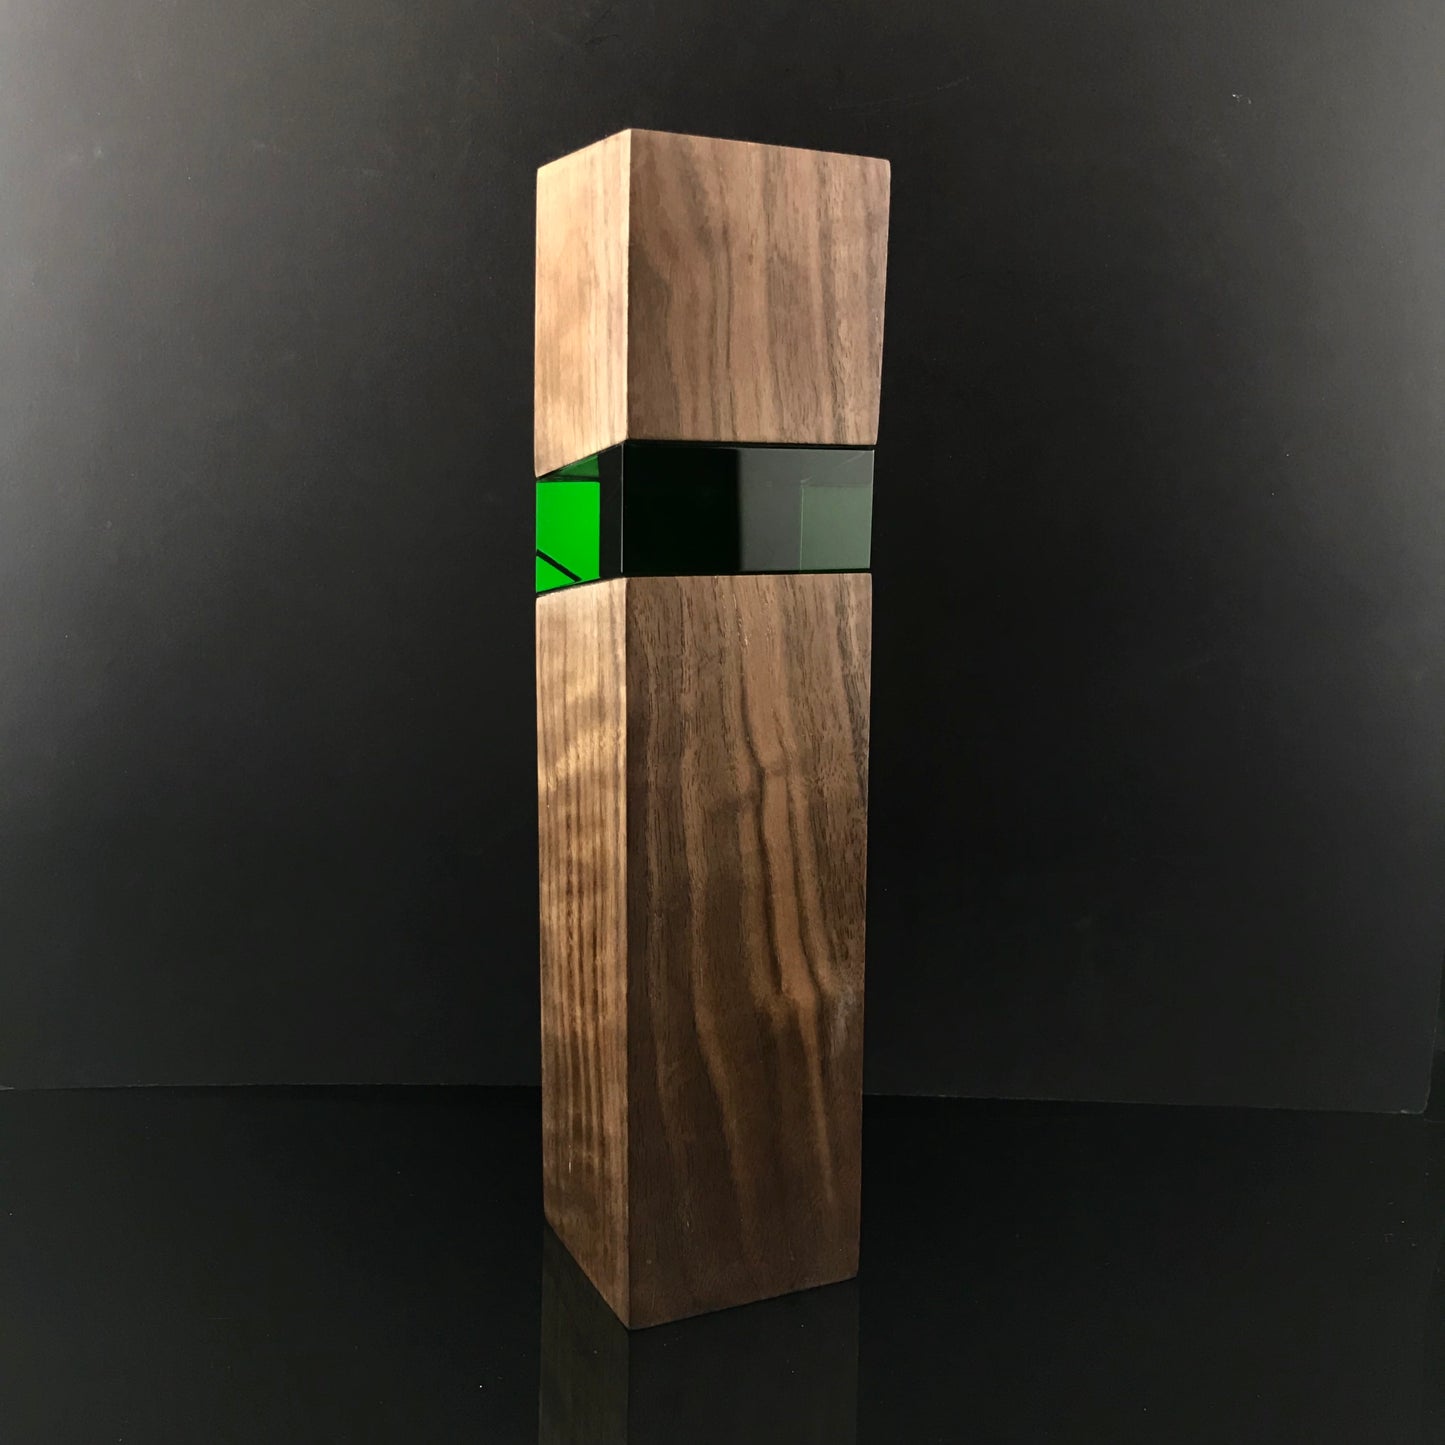 Jade Green Wood with Crystal Award